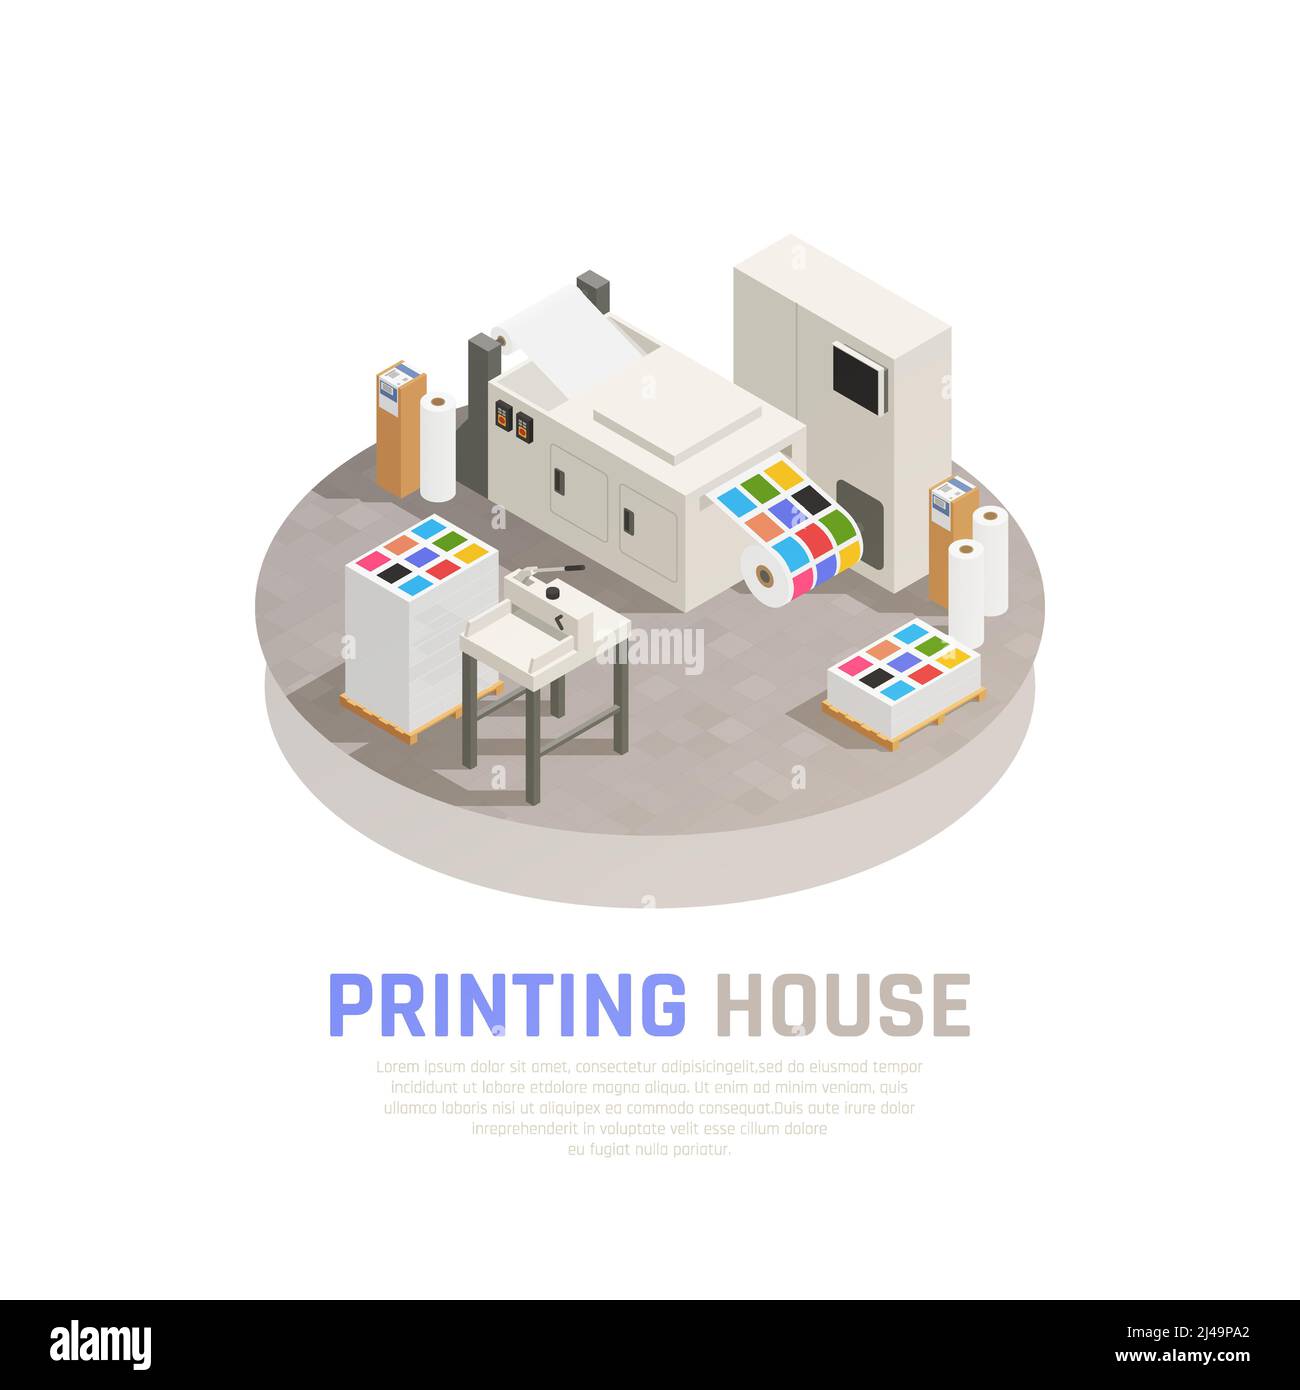 Stampante colorata e isolata, poligrafia composizione isometrica con monocromia illustrazione vettoriale della sala di stampa a colori Illustrazione Vettoriale